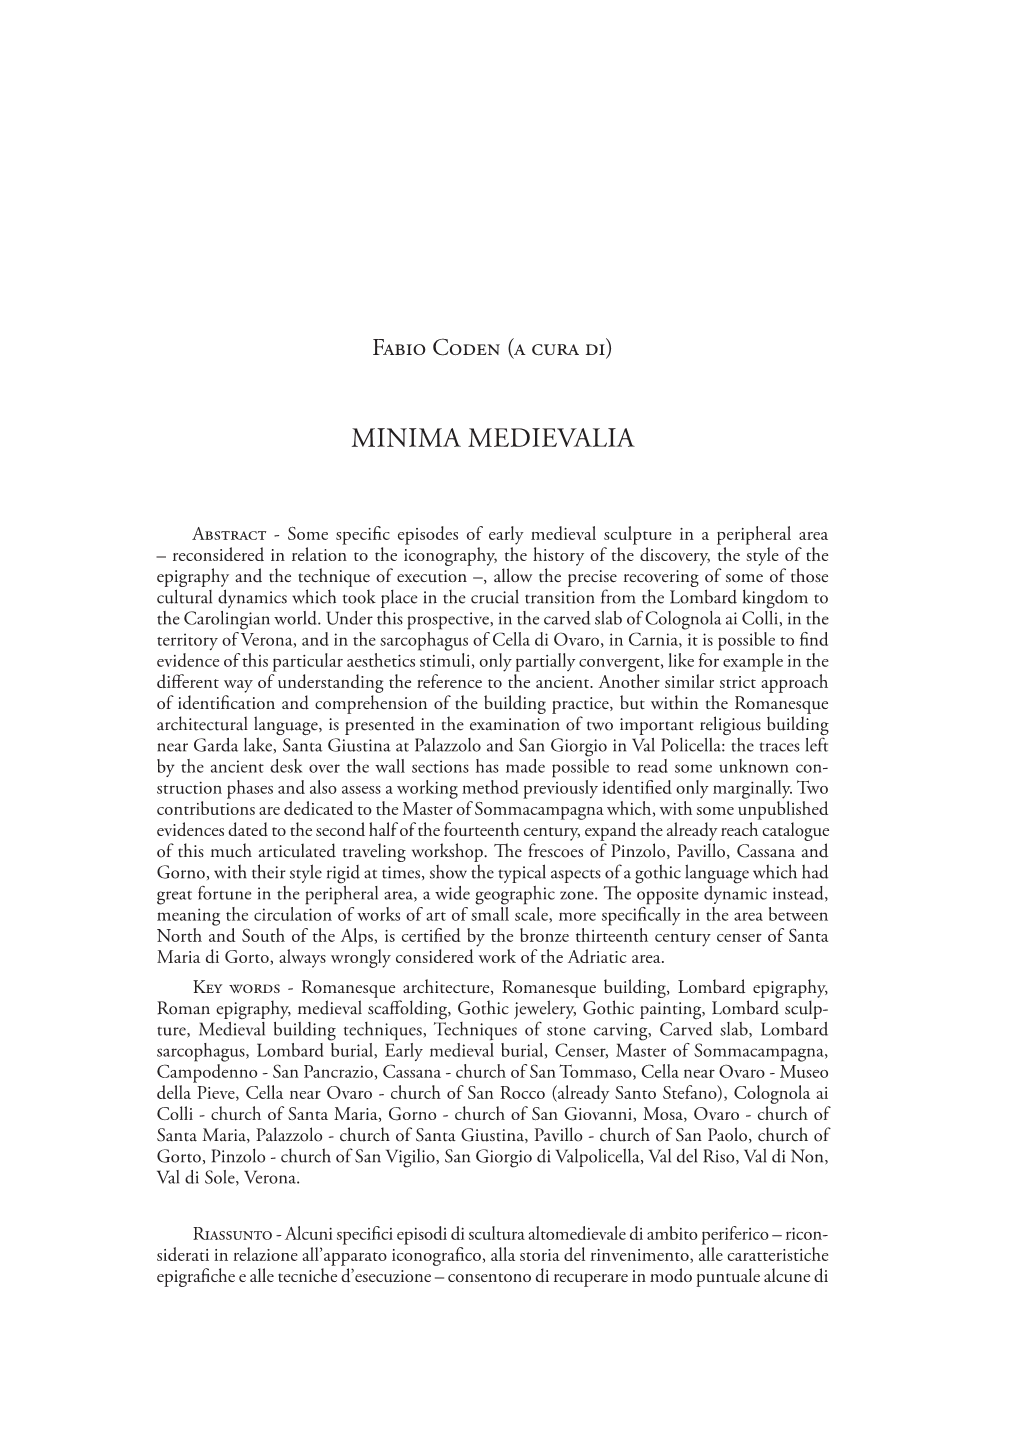 Minima Medievalia